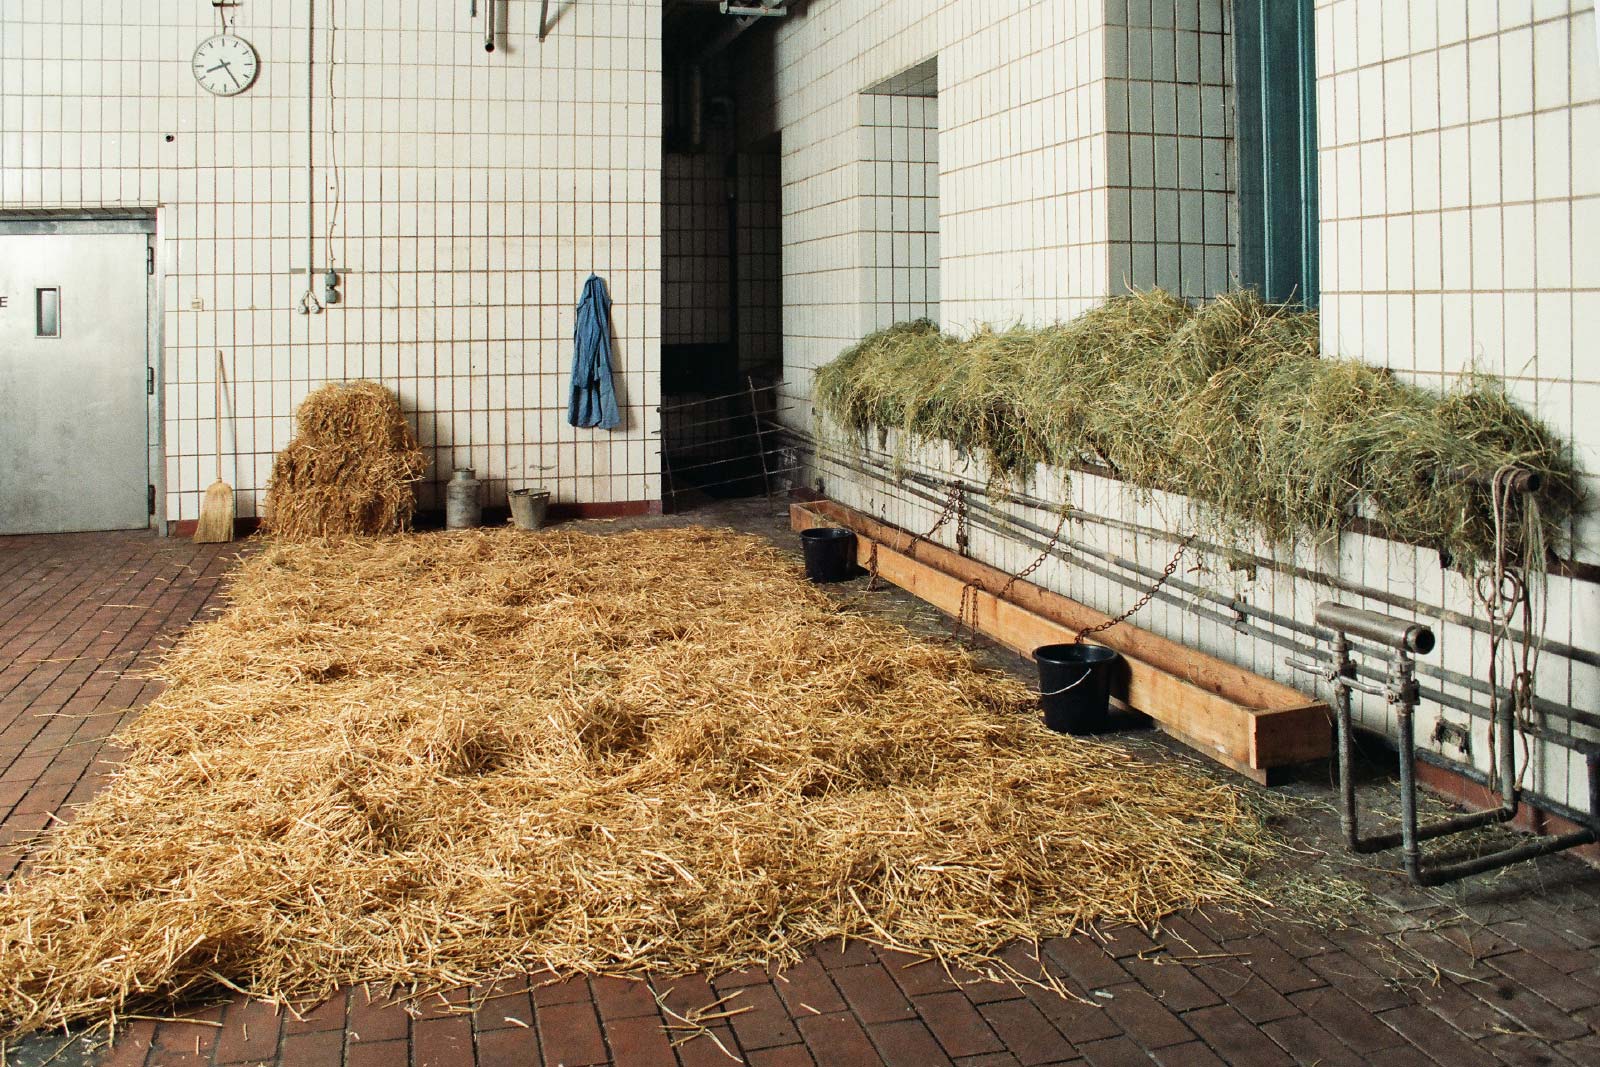 Stoi (Stall),
1996 | Installation in einer ehemaligen Molkerei in Wien am Prater
Stroh, Heu, Krippe, Futtertrog, Wassereimer, Ketten, Milchkanne, Melkeimer, Besen, Arbeitskittel